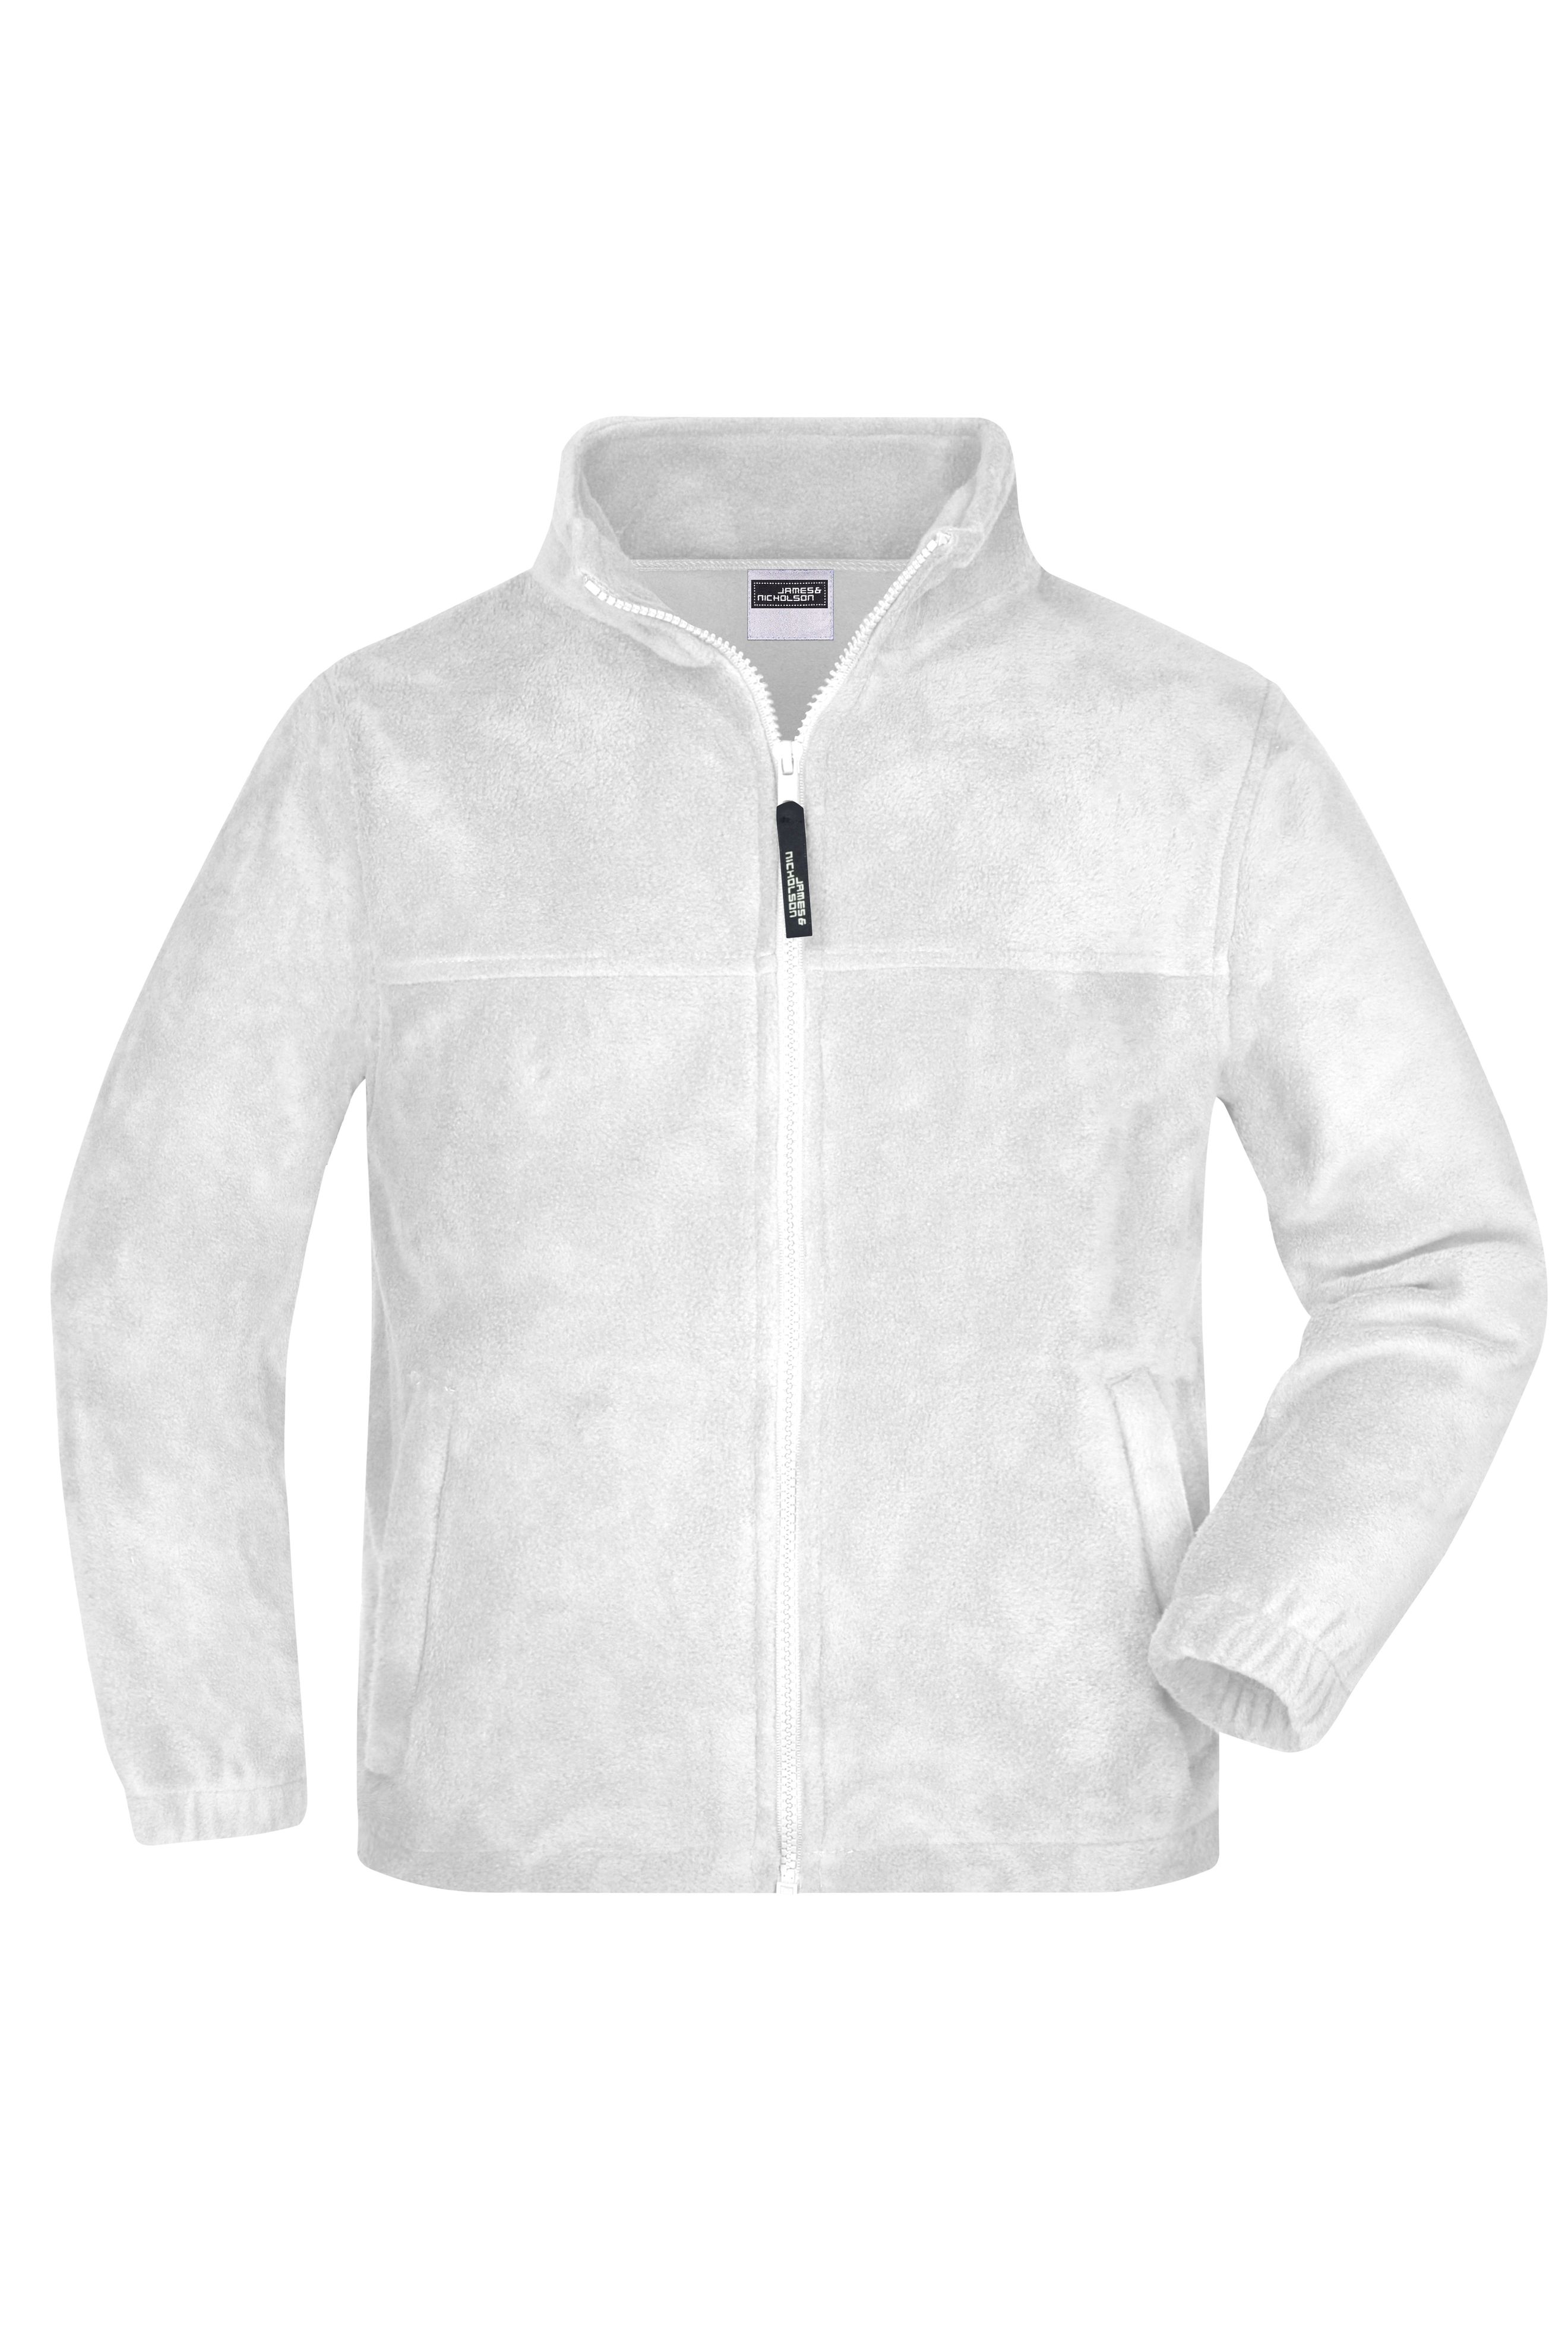 Full-Zip Fleece Junior JN044K Jacke in schwerer Fleece-Qualität